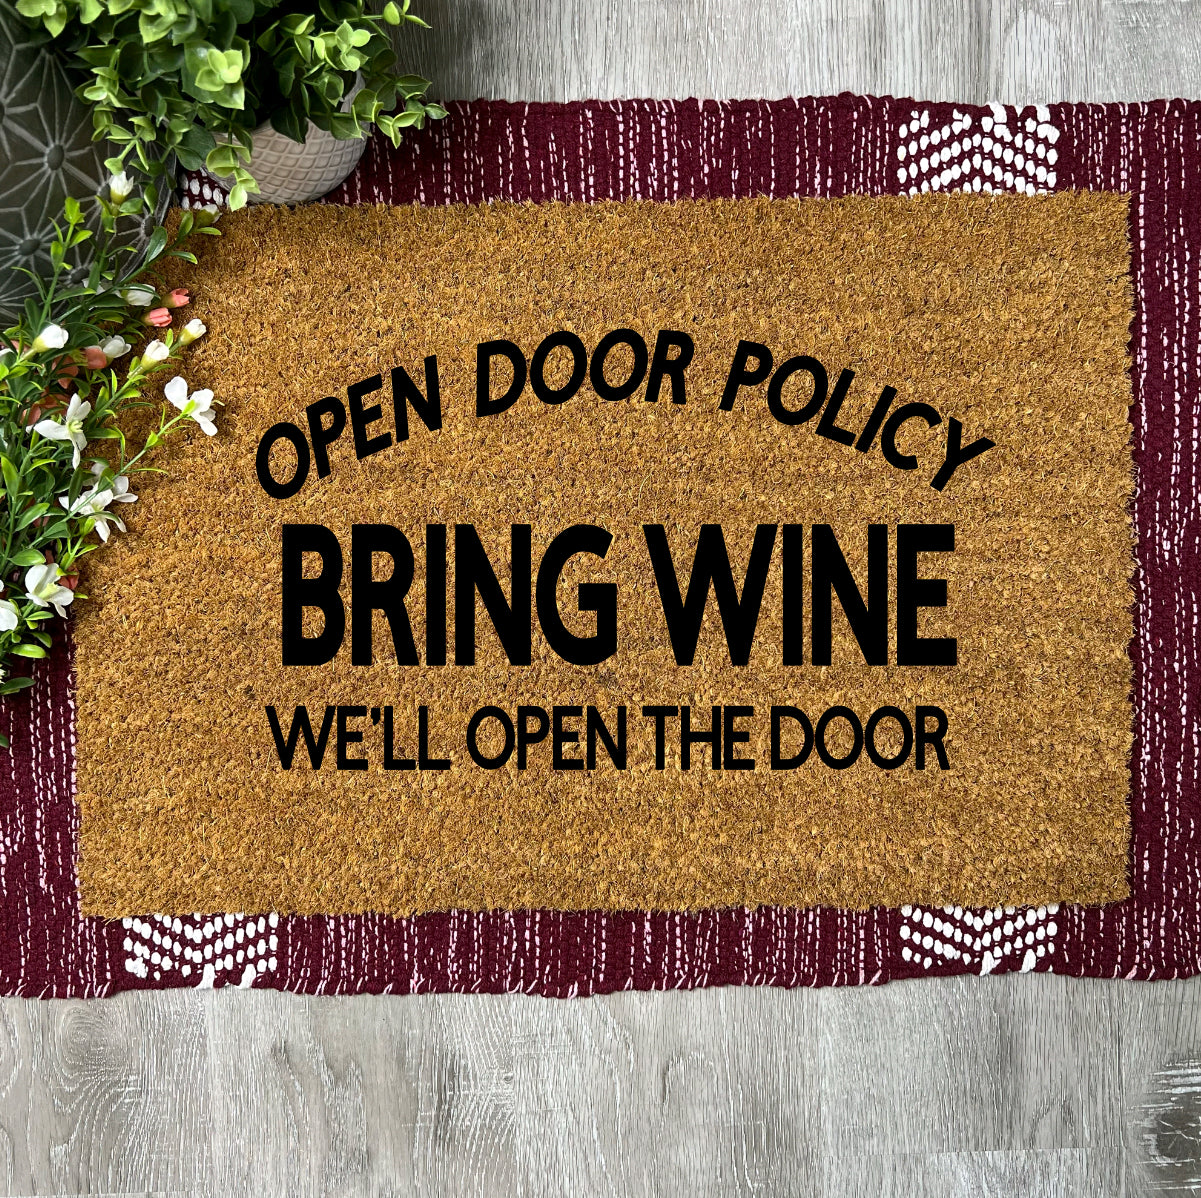 Open Door Policy, Bring Wine